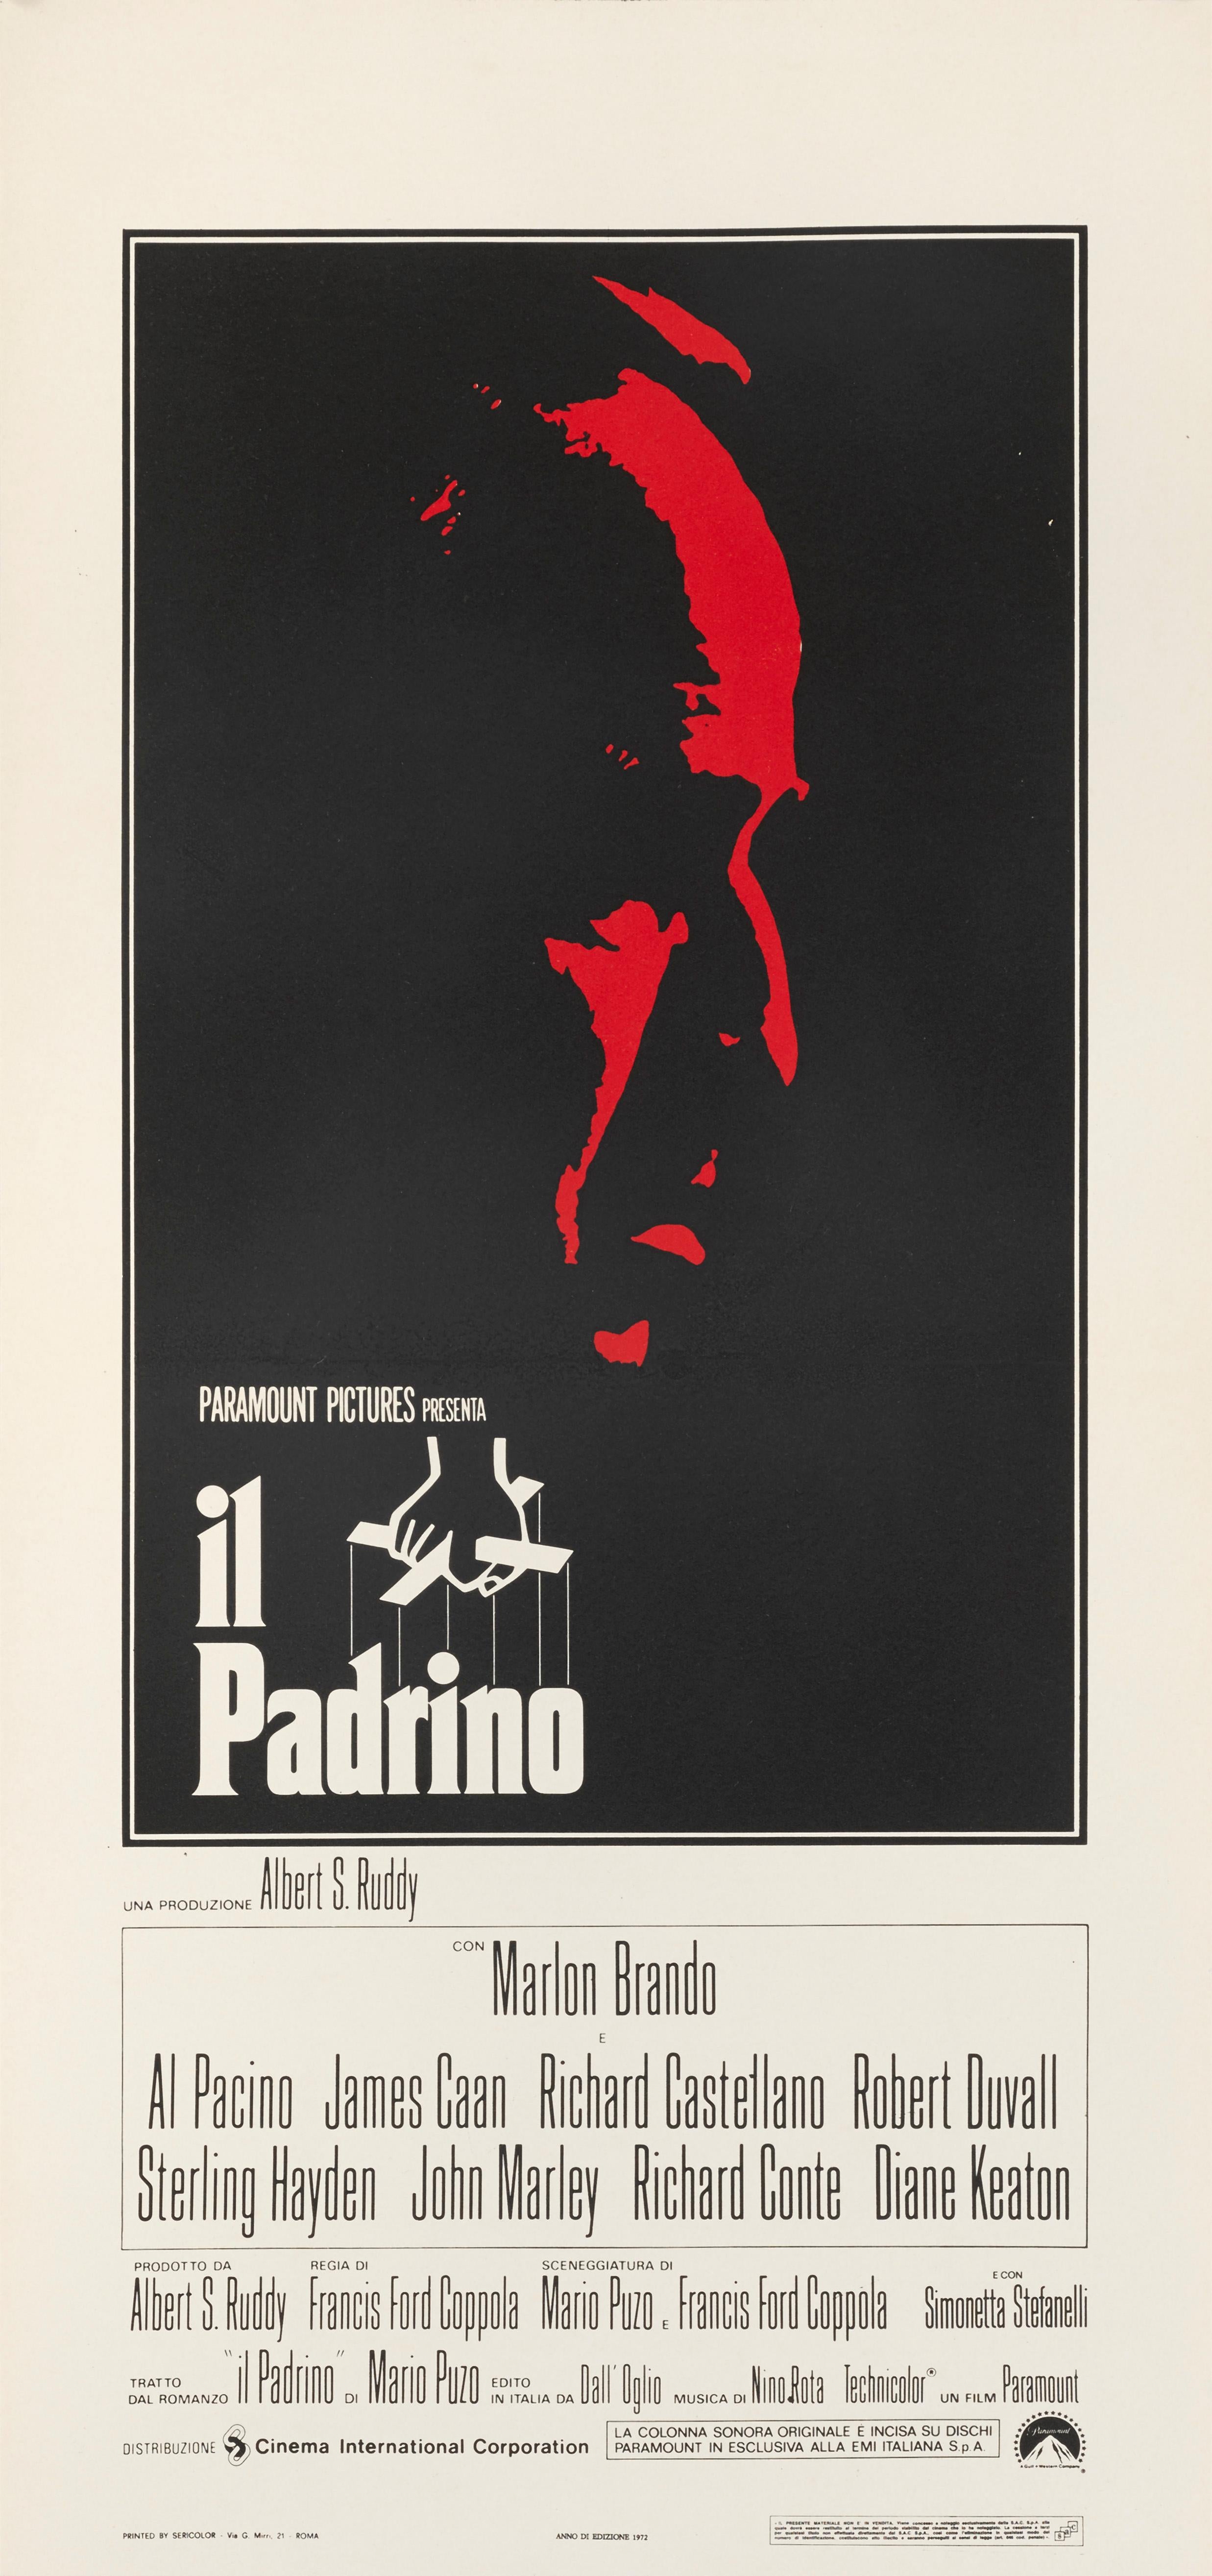 Affiche originale du film de Francis Ford Coppola avec Marlon Brando, Al Pacino et Robert Duval. 
Cette pièce est en excellent état, la couleur restant très brillante avec seulement une restauration très mineure au niveau du Foldes central. Il